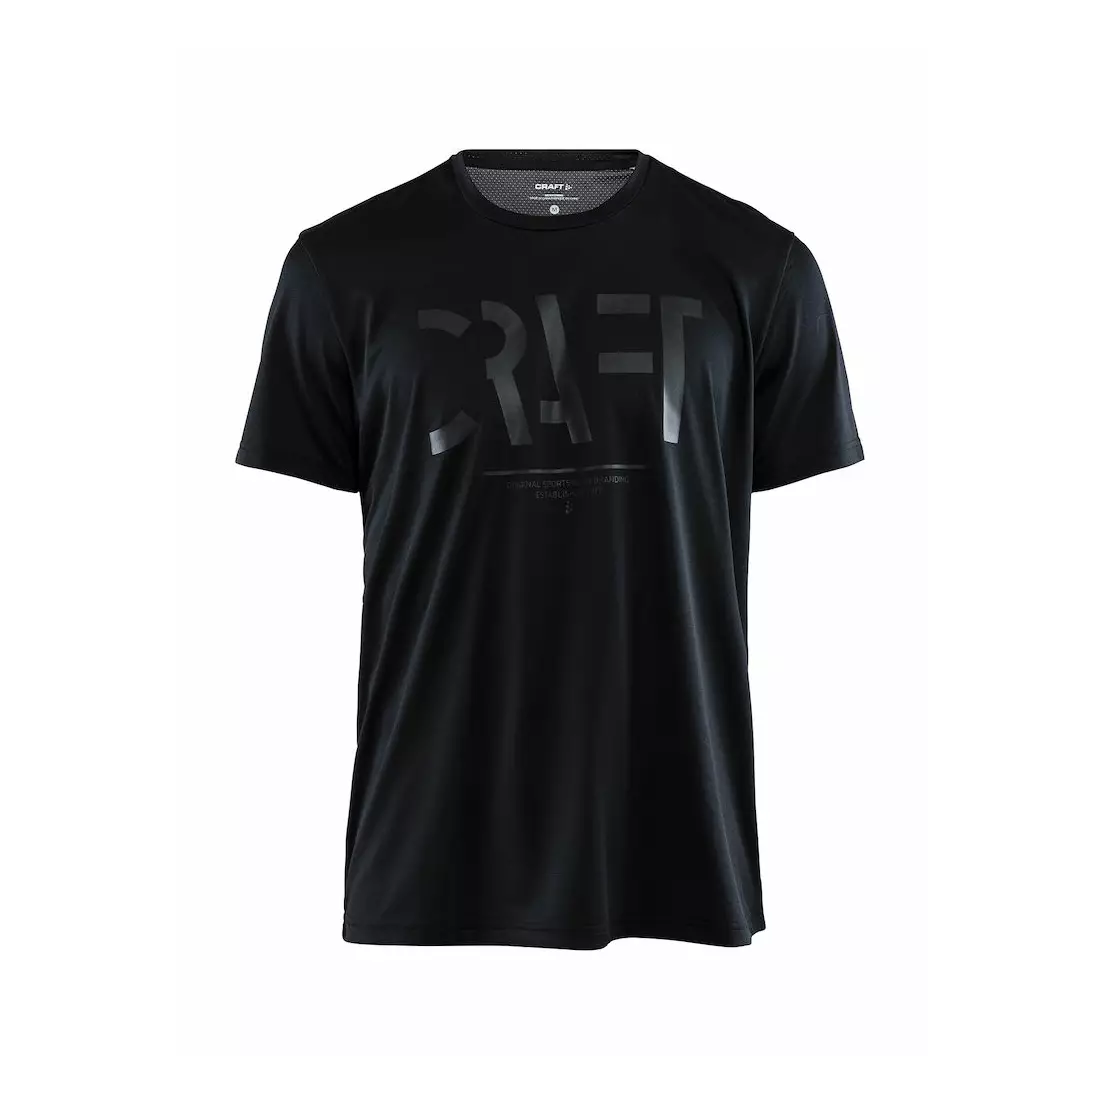 CRAFT EAZE MESH férfi sport / futó póló, fekete 1907018-999000